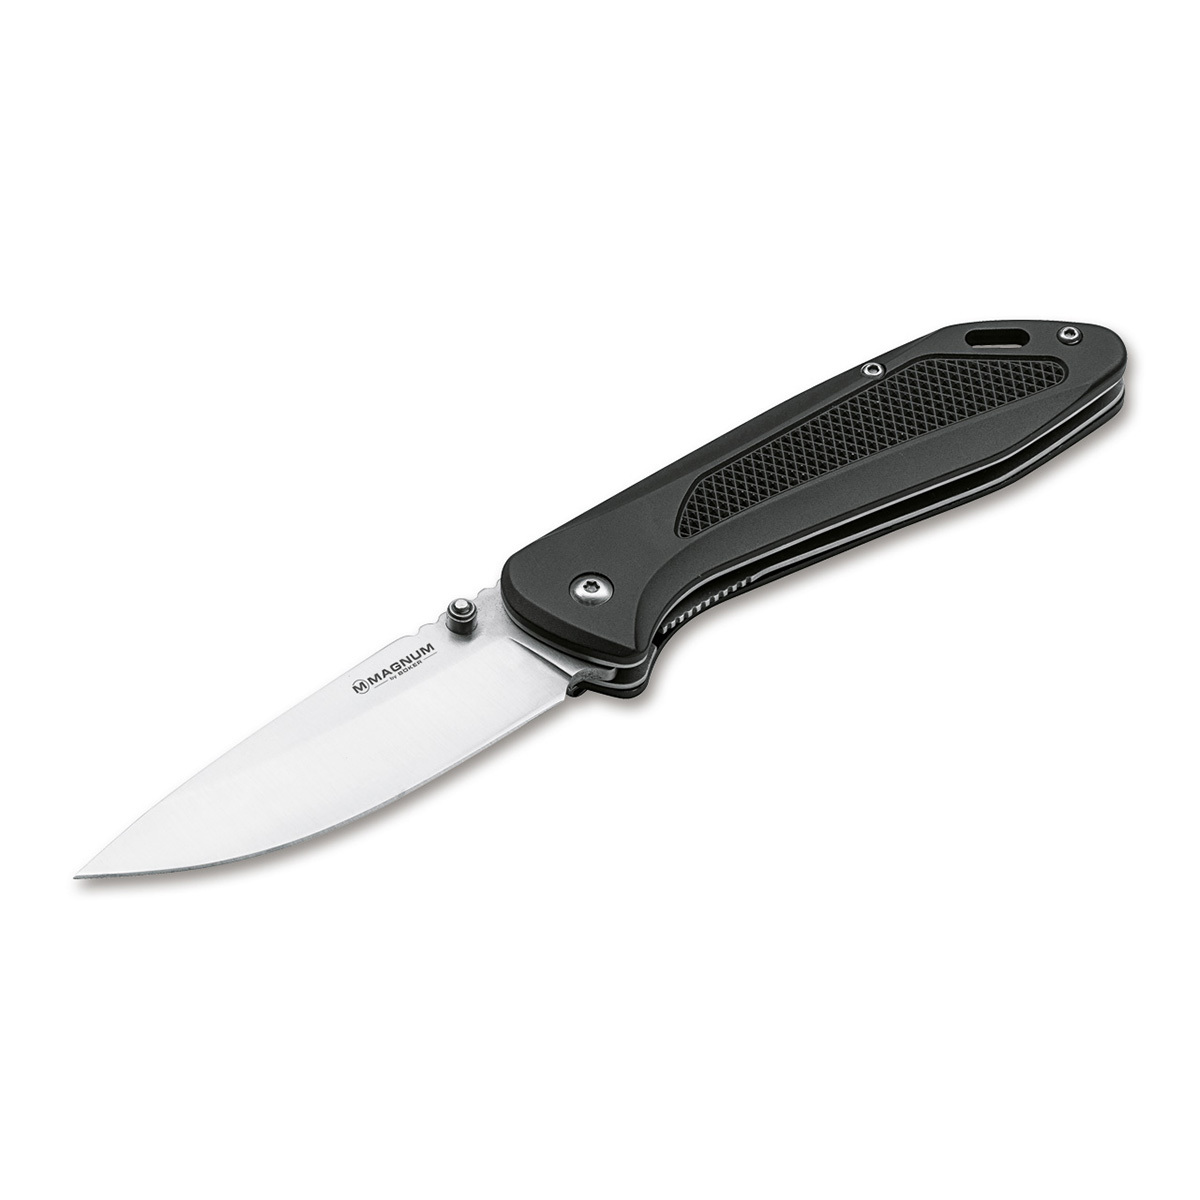 Нож складной Boker Advance black, сталь 440C, рукоять алюминий складной нож buck trunk сталь 7cr рукоять g10